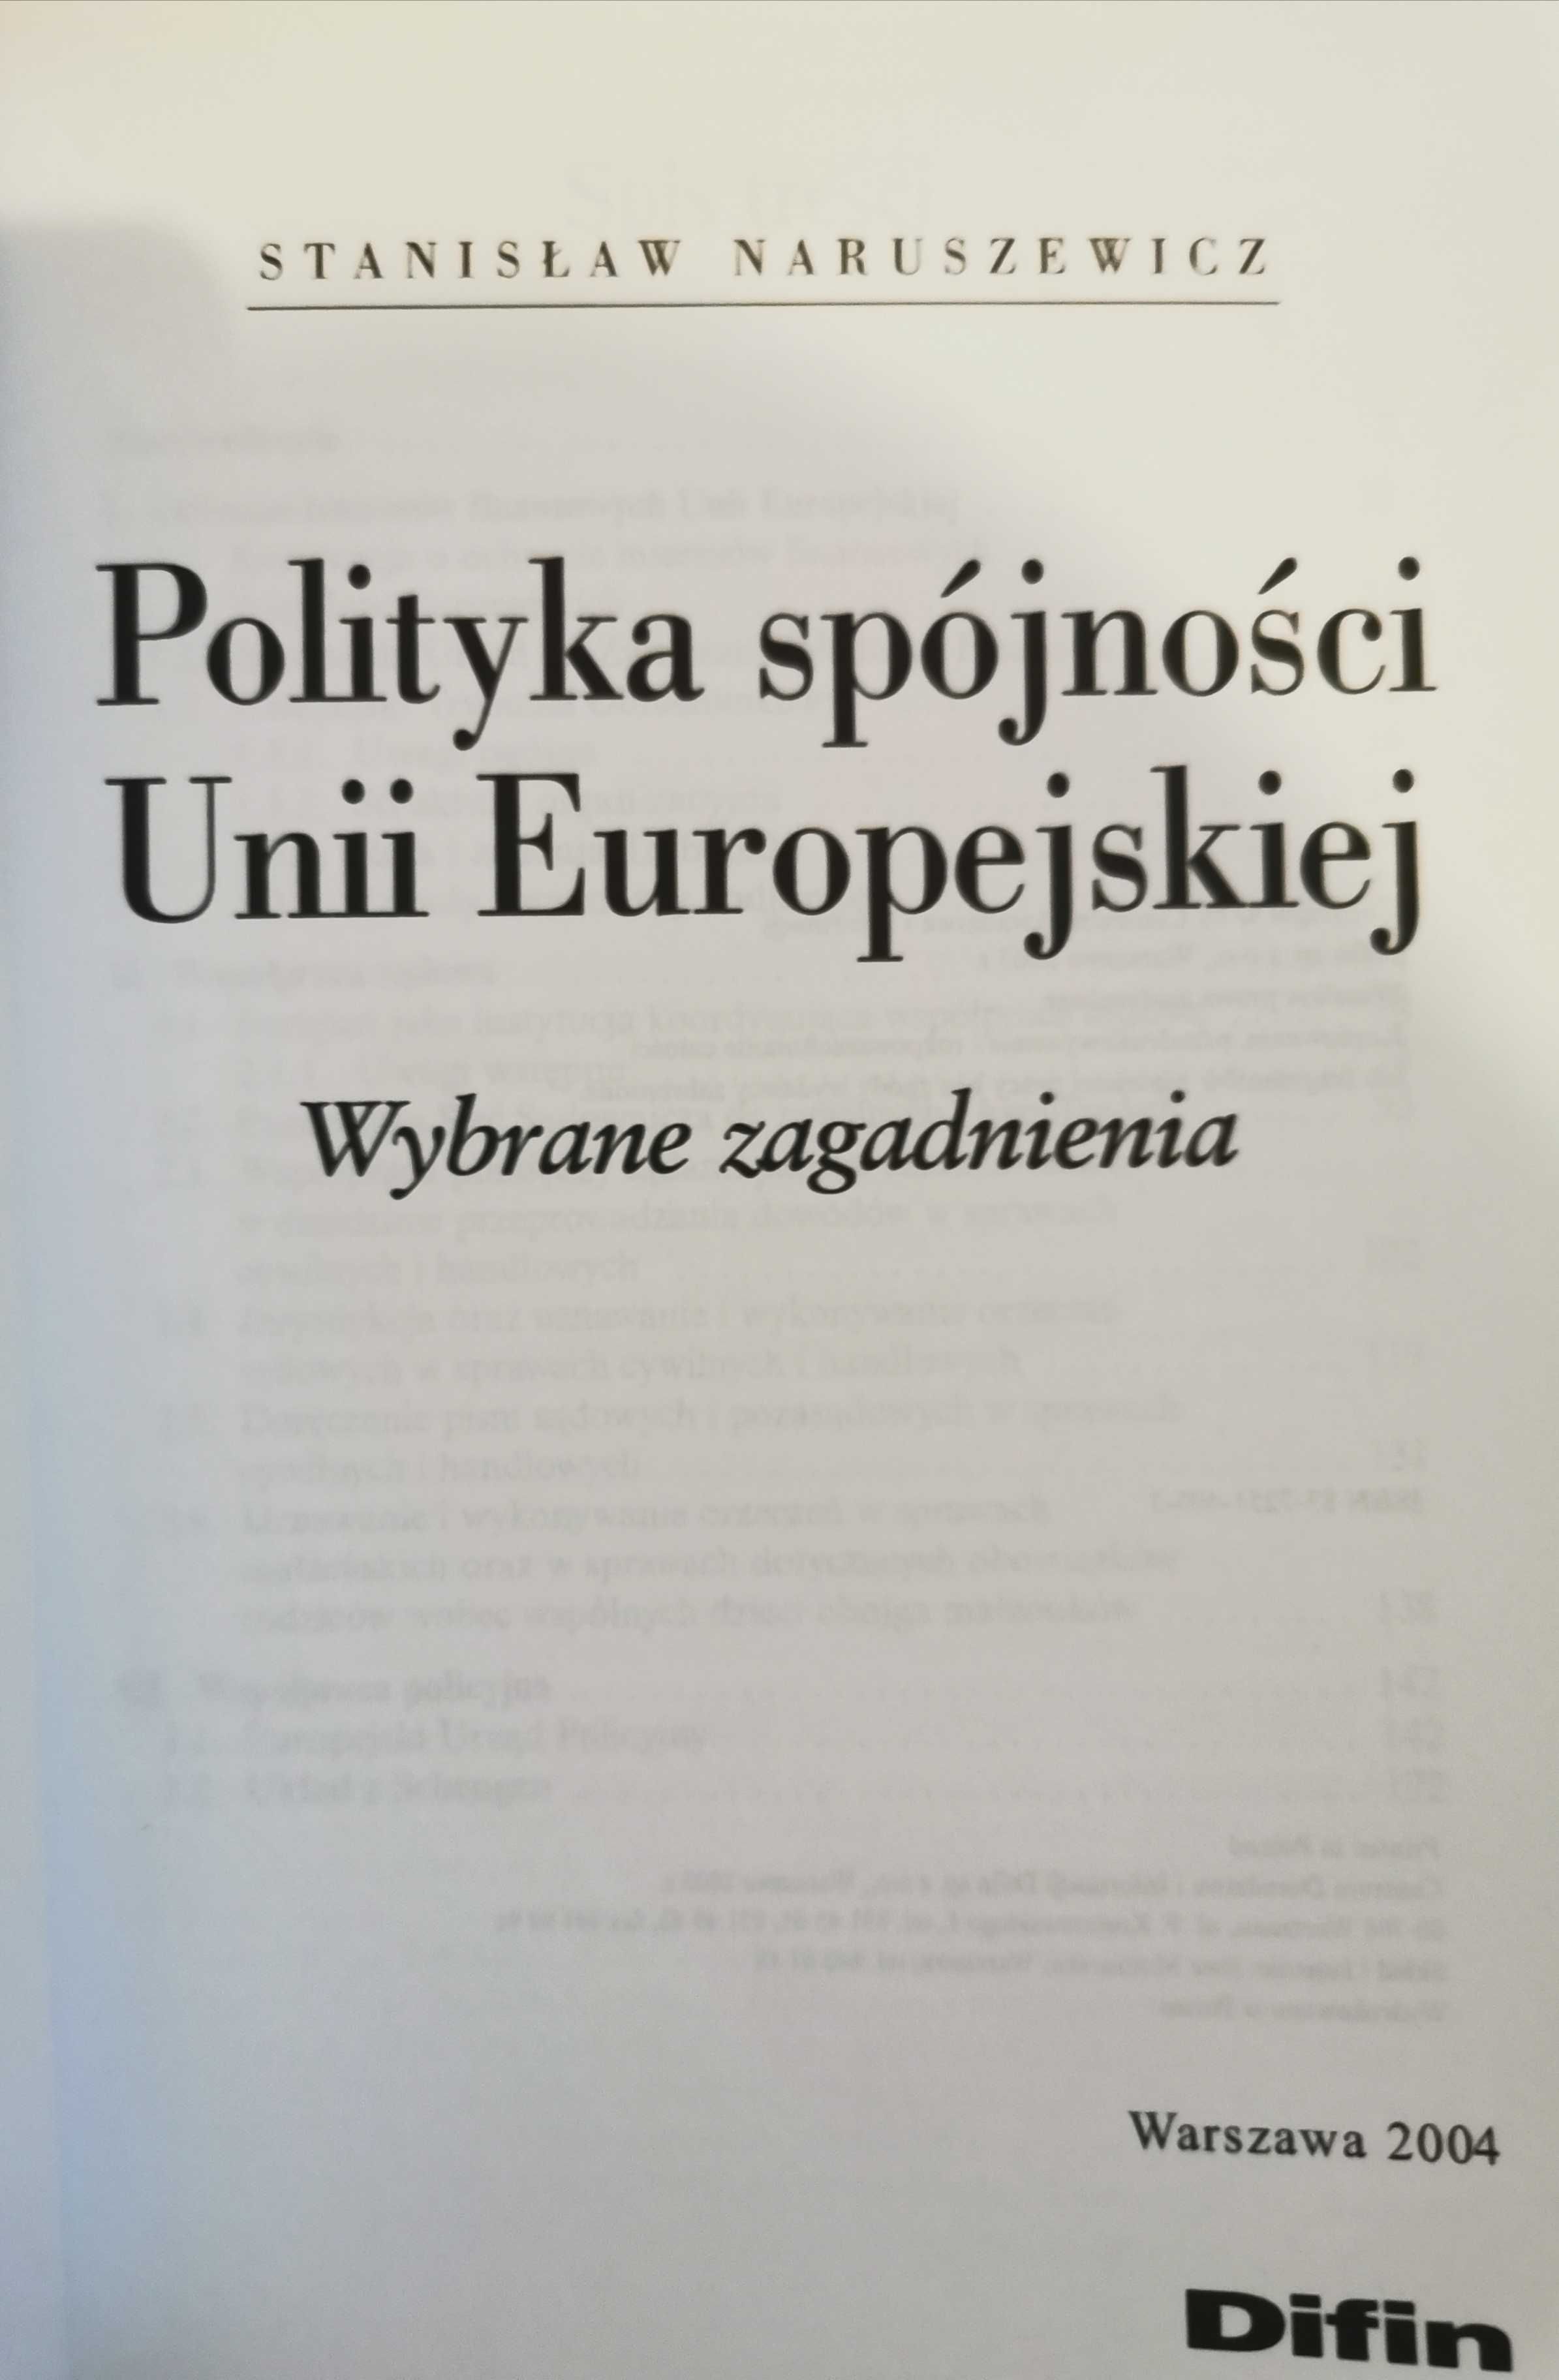 Polityka spójności Unii Europejskiej Stanisław Naruszewicz Difin